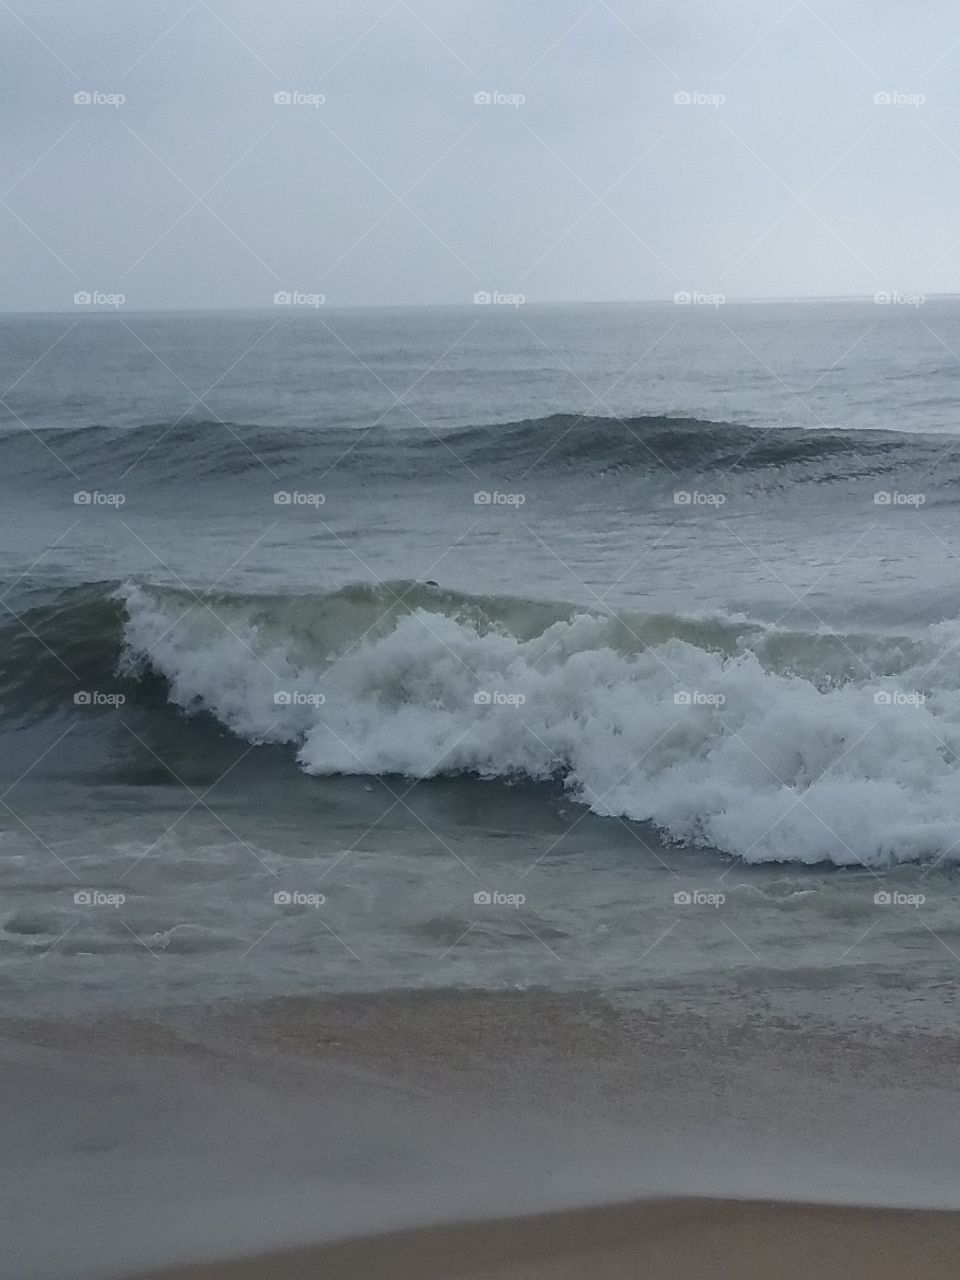 Ocean City MD waves